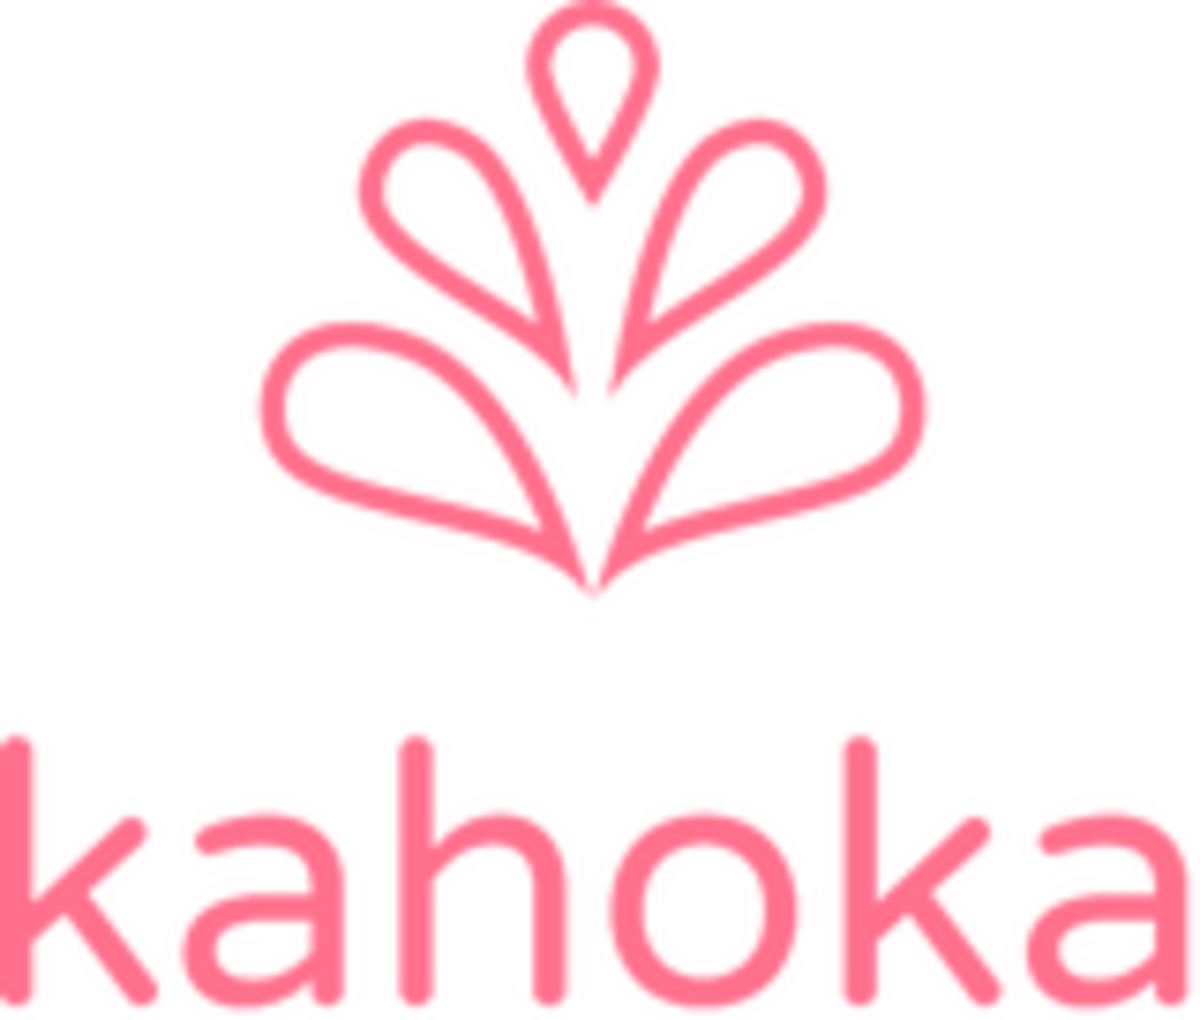 kahoka.thebase.in